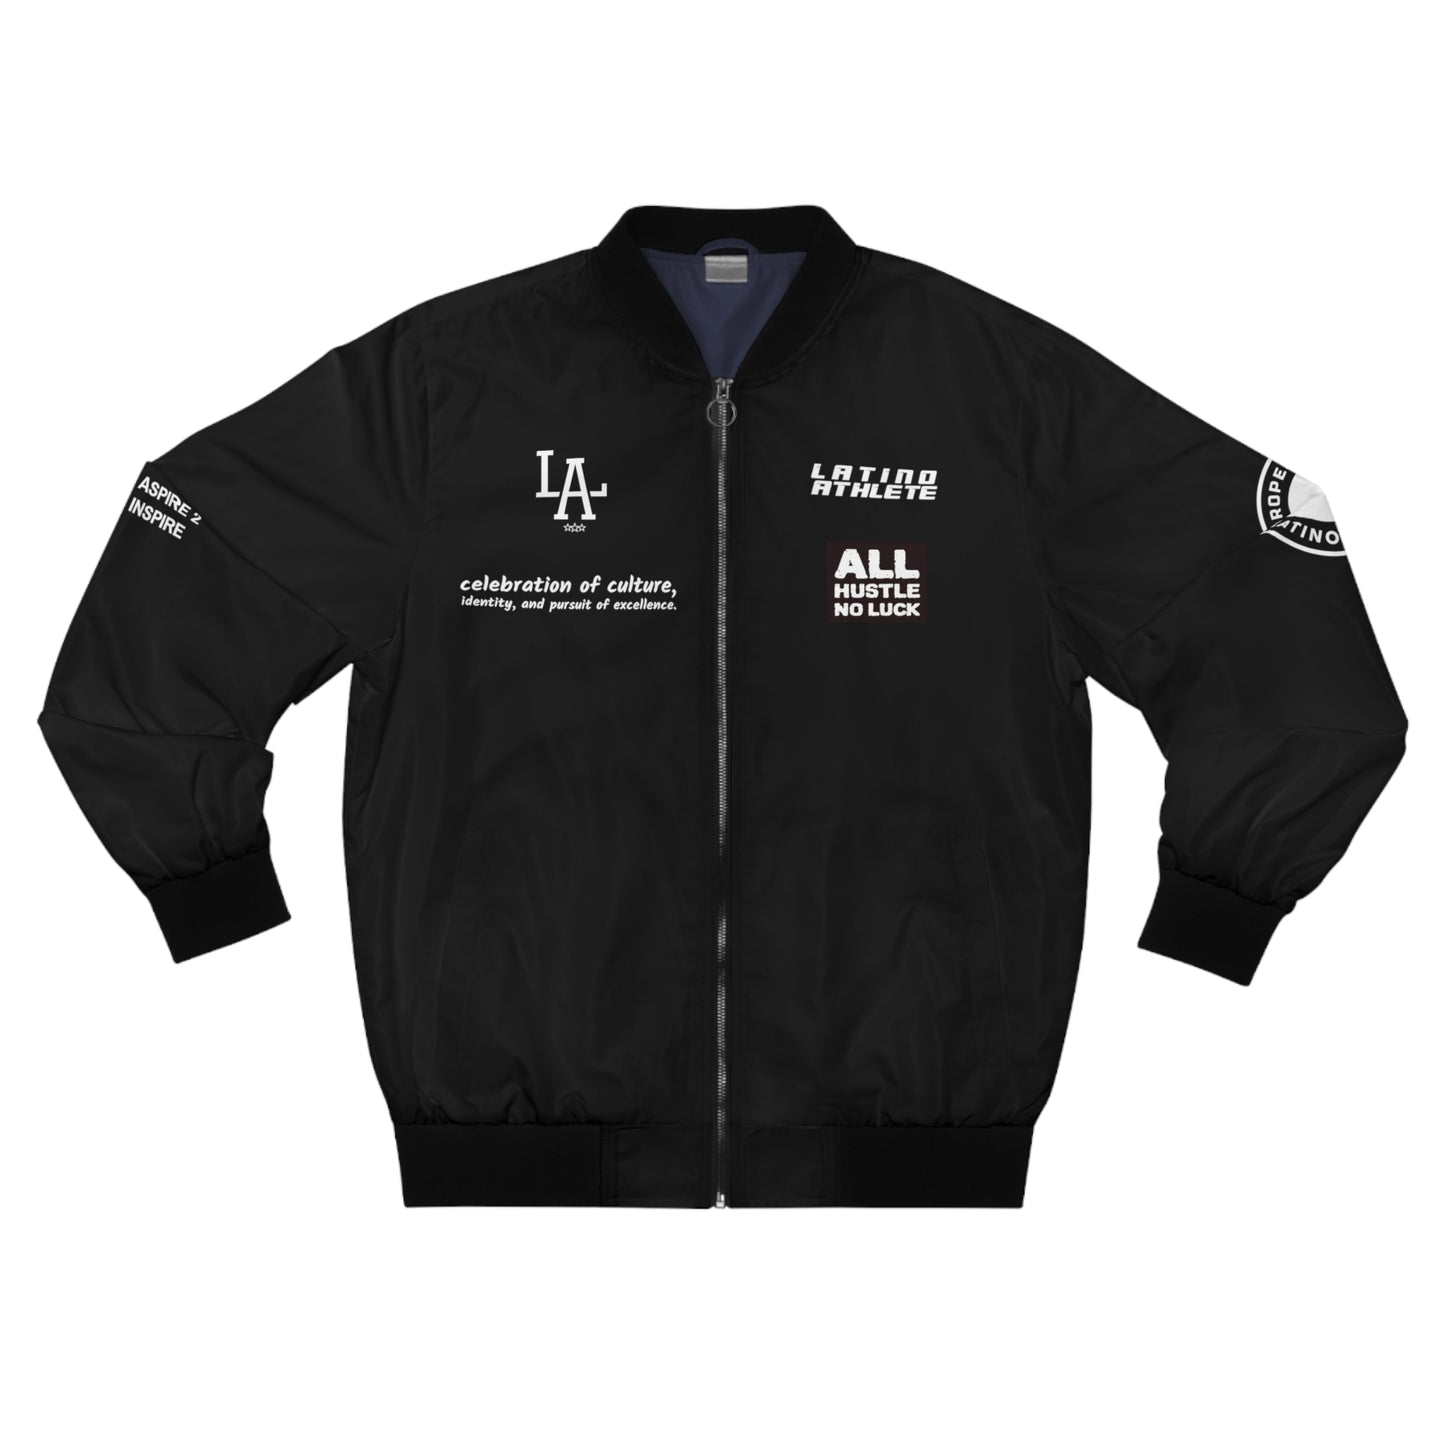 LatinoAthlete Men's Bomber Jacket